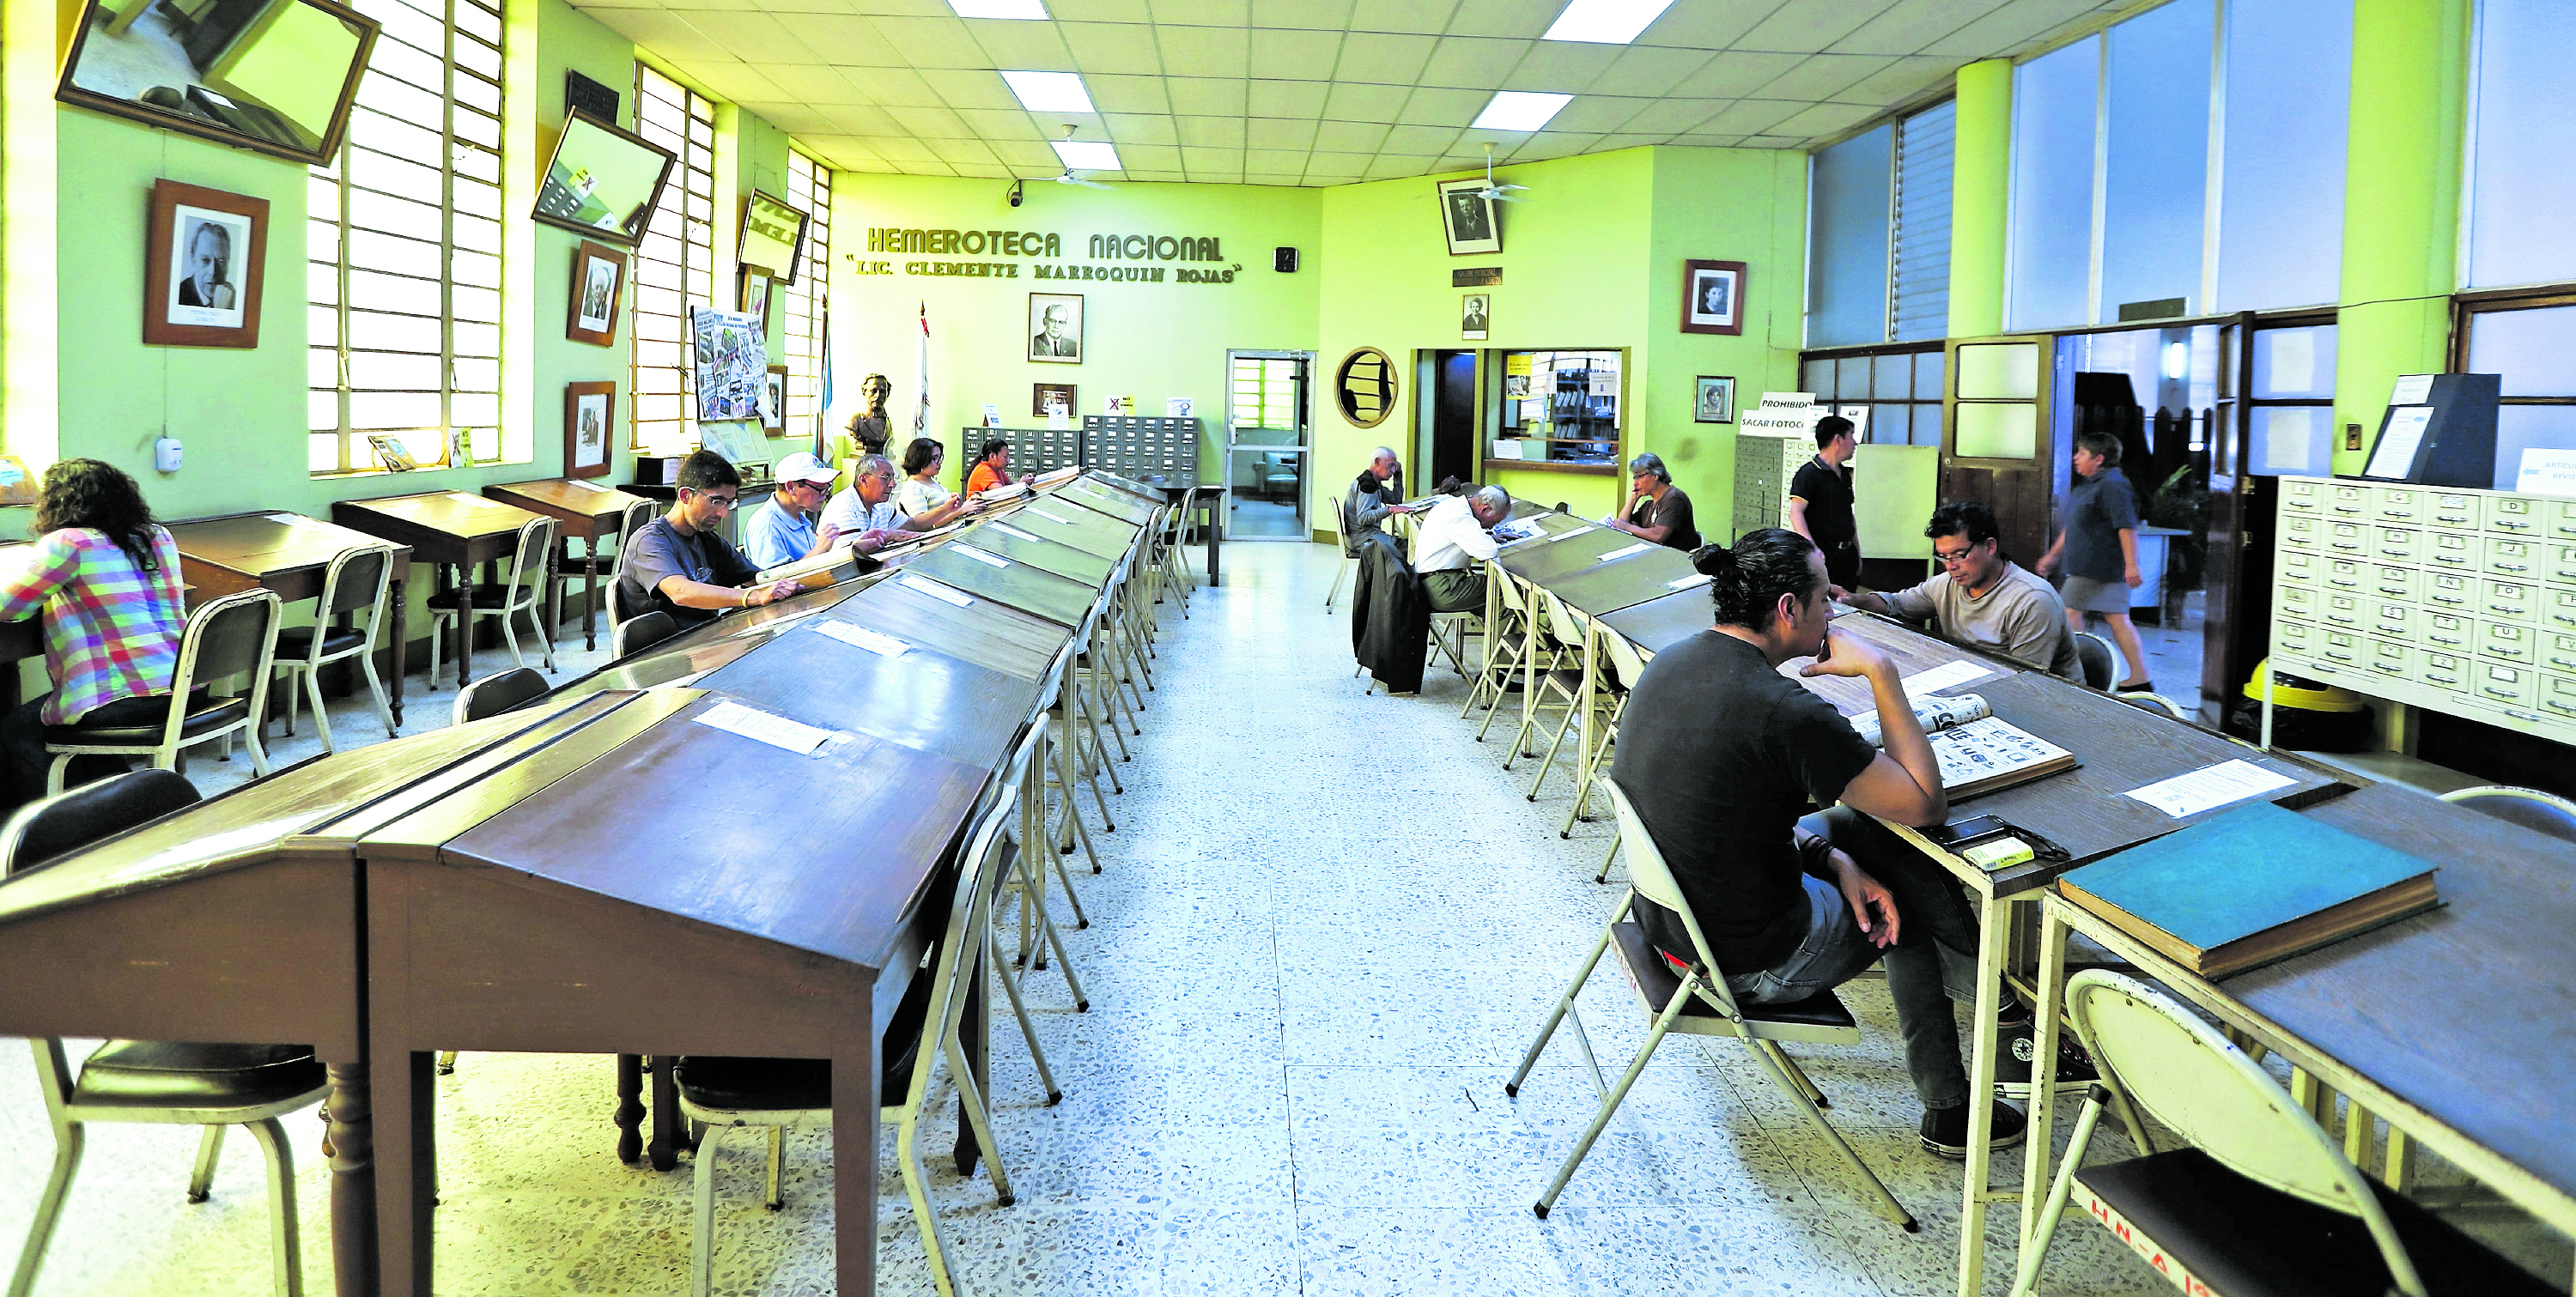 Así lucía la sala de lectura antes de la pandemia y se espera poder volver a recibir a estudiantes e investigadores después de la emergencia sanitaria. Foto Prensa Libre: Hemeroteca PL.